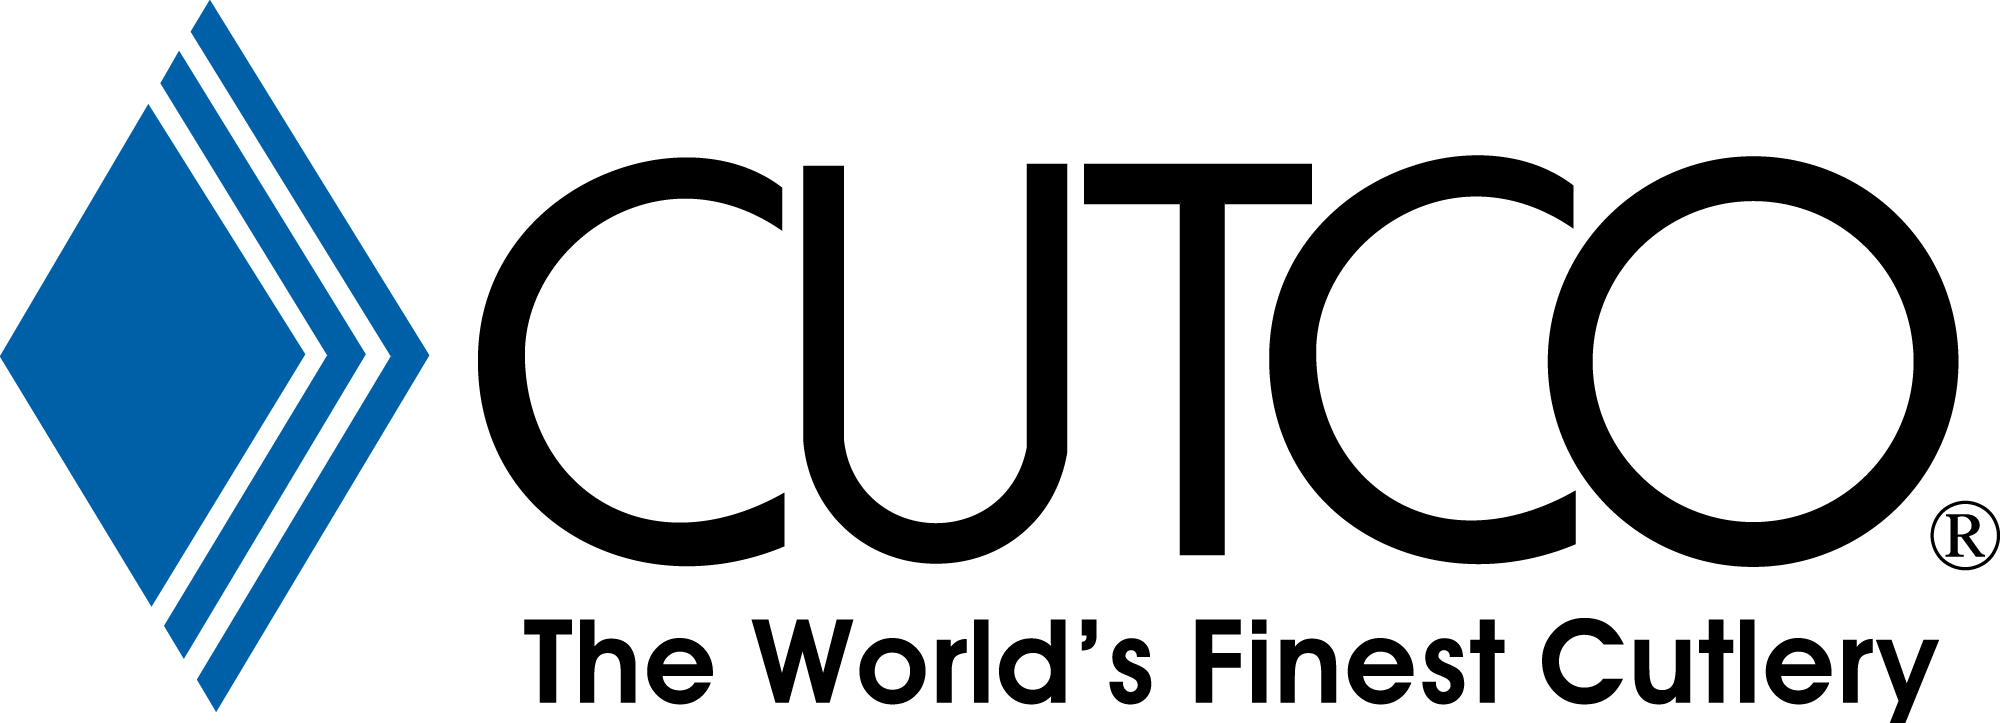 12 Photos of CUTCO Vector Logo